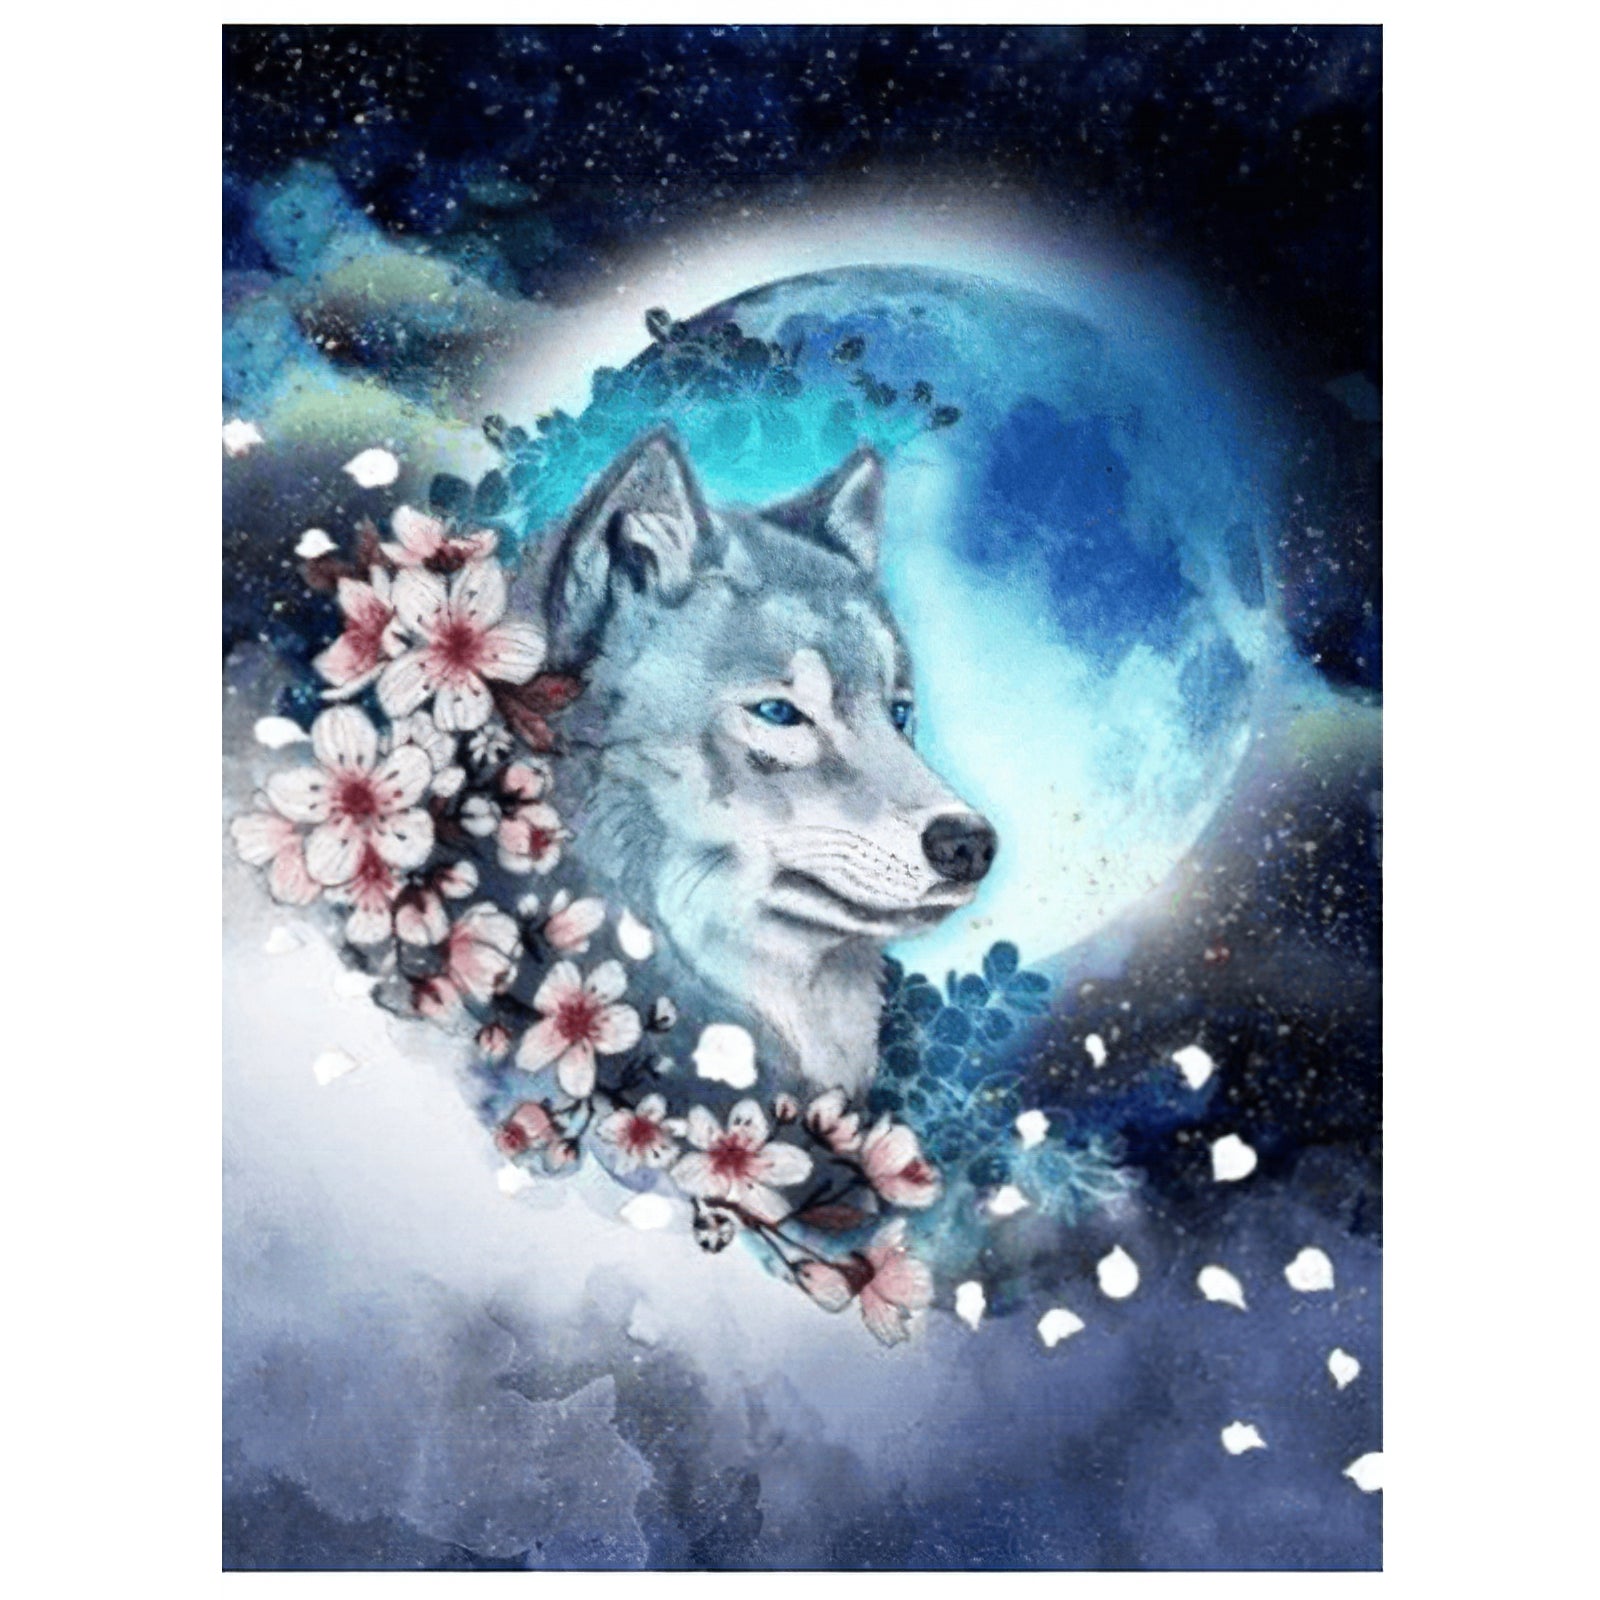 Loup, Univers et Fleur d'étoile